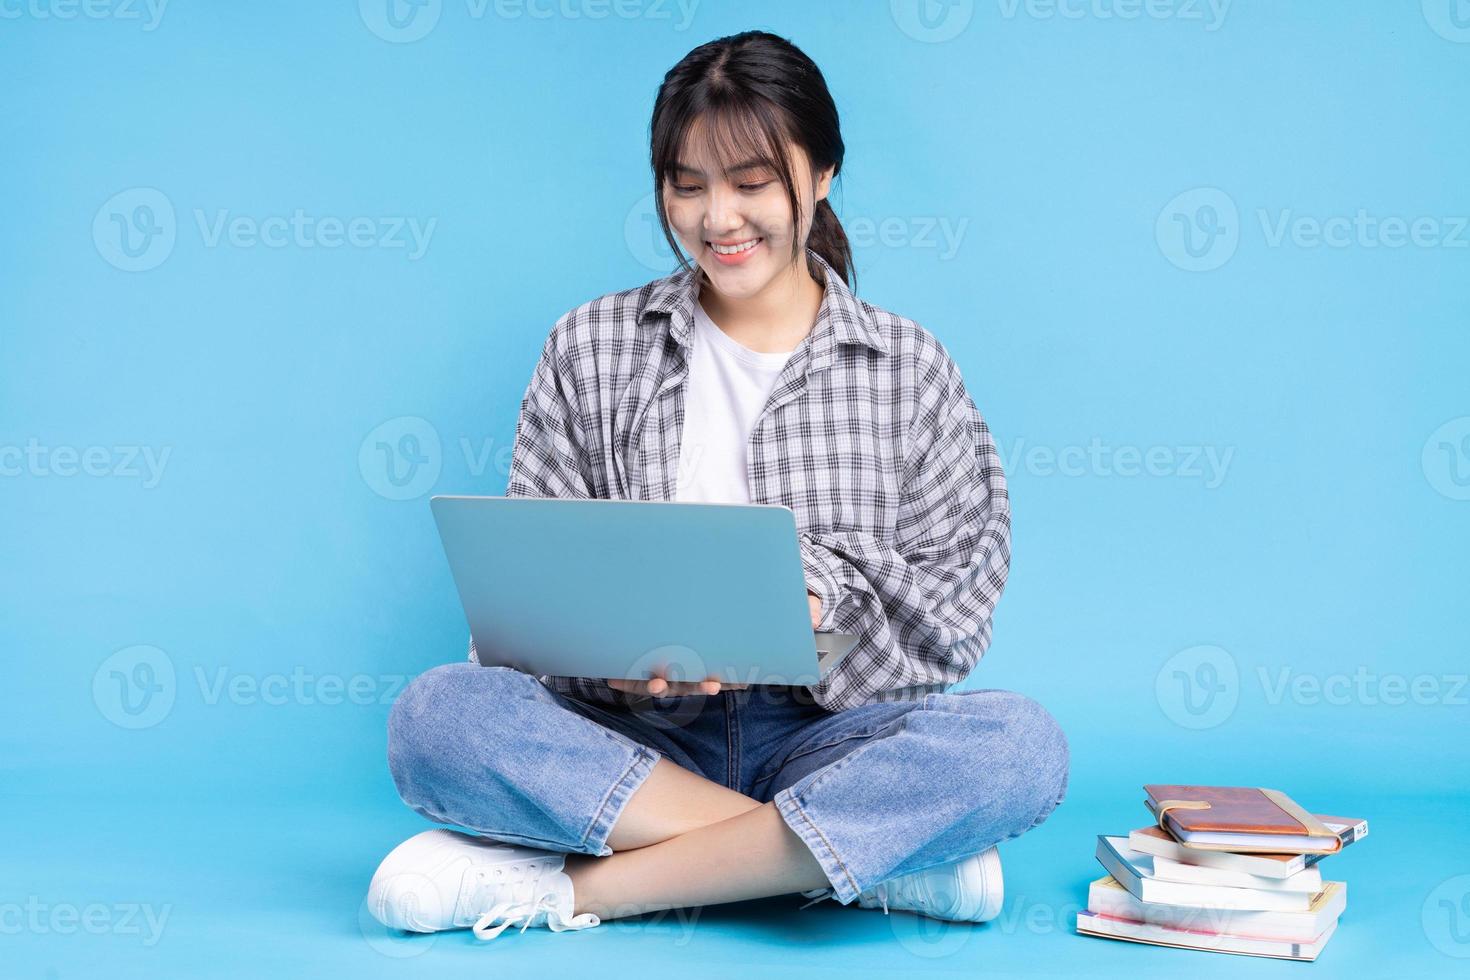 asiatisk kvinnlig student med lekfullt uttryck på blå bakgrund foto